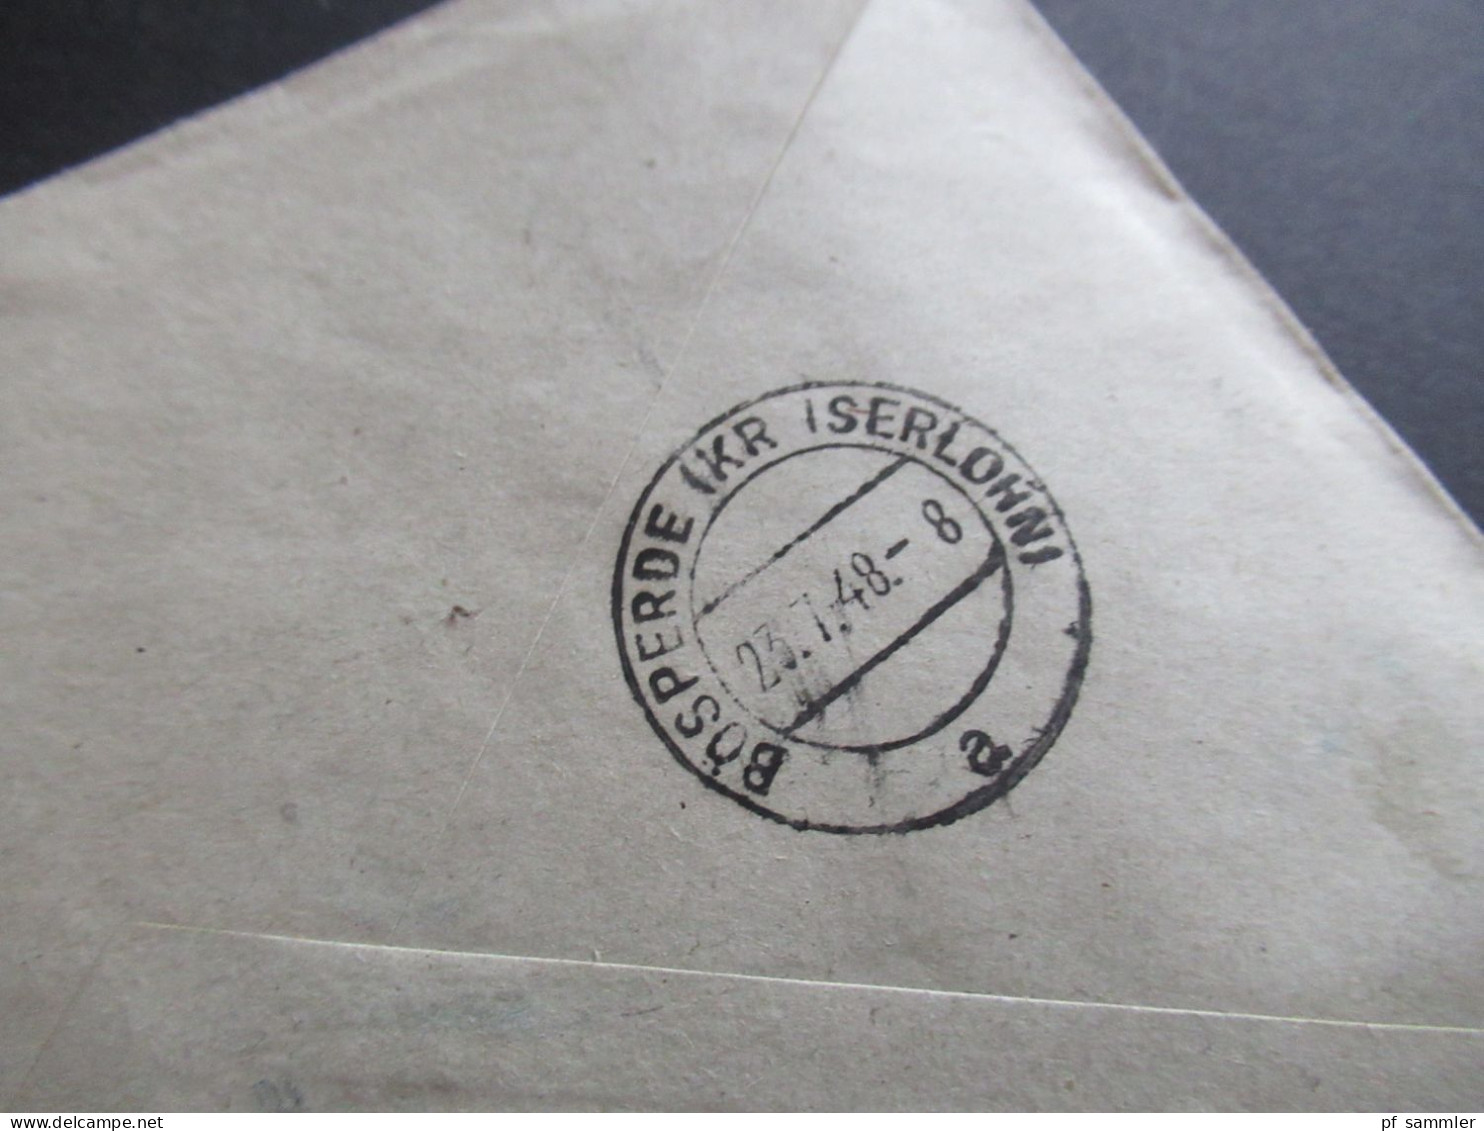 15.7.1948 SBZ MiF Marken Mit Aufdruck Und Kontrollrat Einschreiben Dresden A 19 - Bösperde Westfalen Mit Ank. Stempel - Covers & Documents